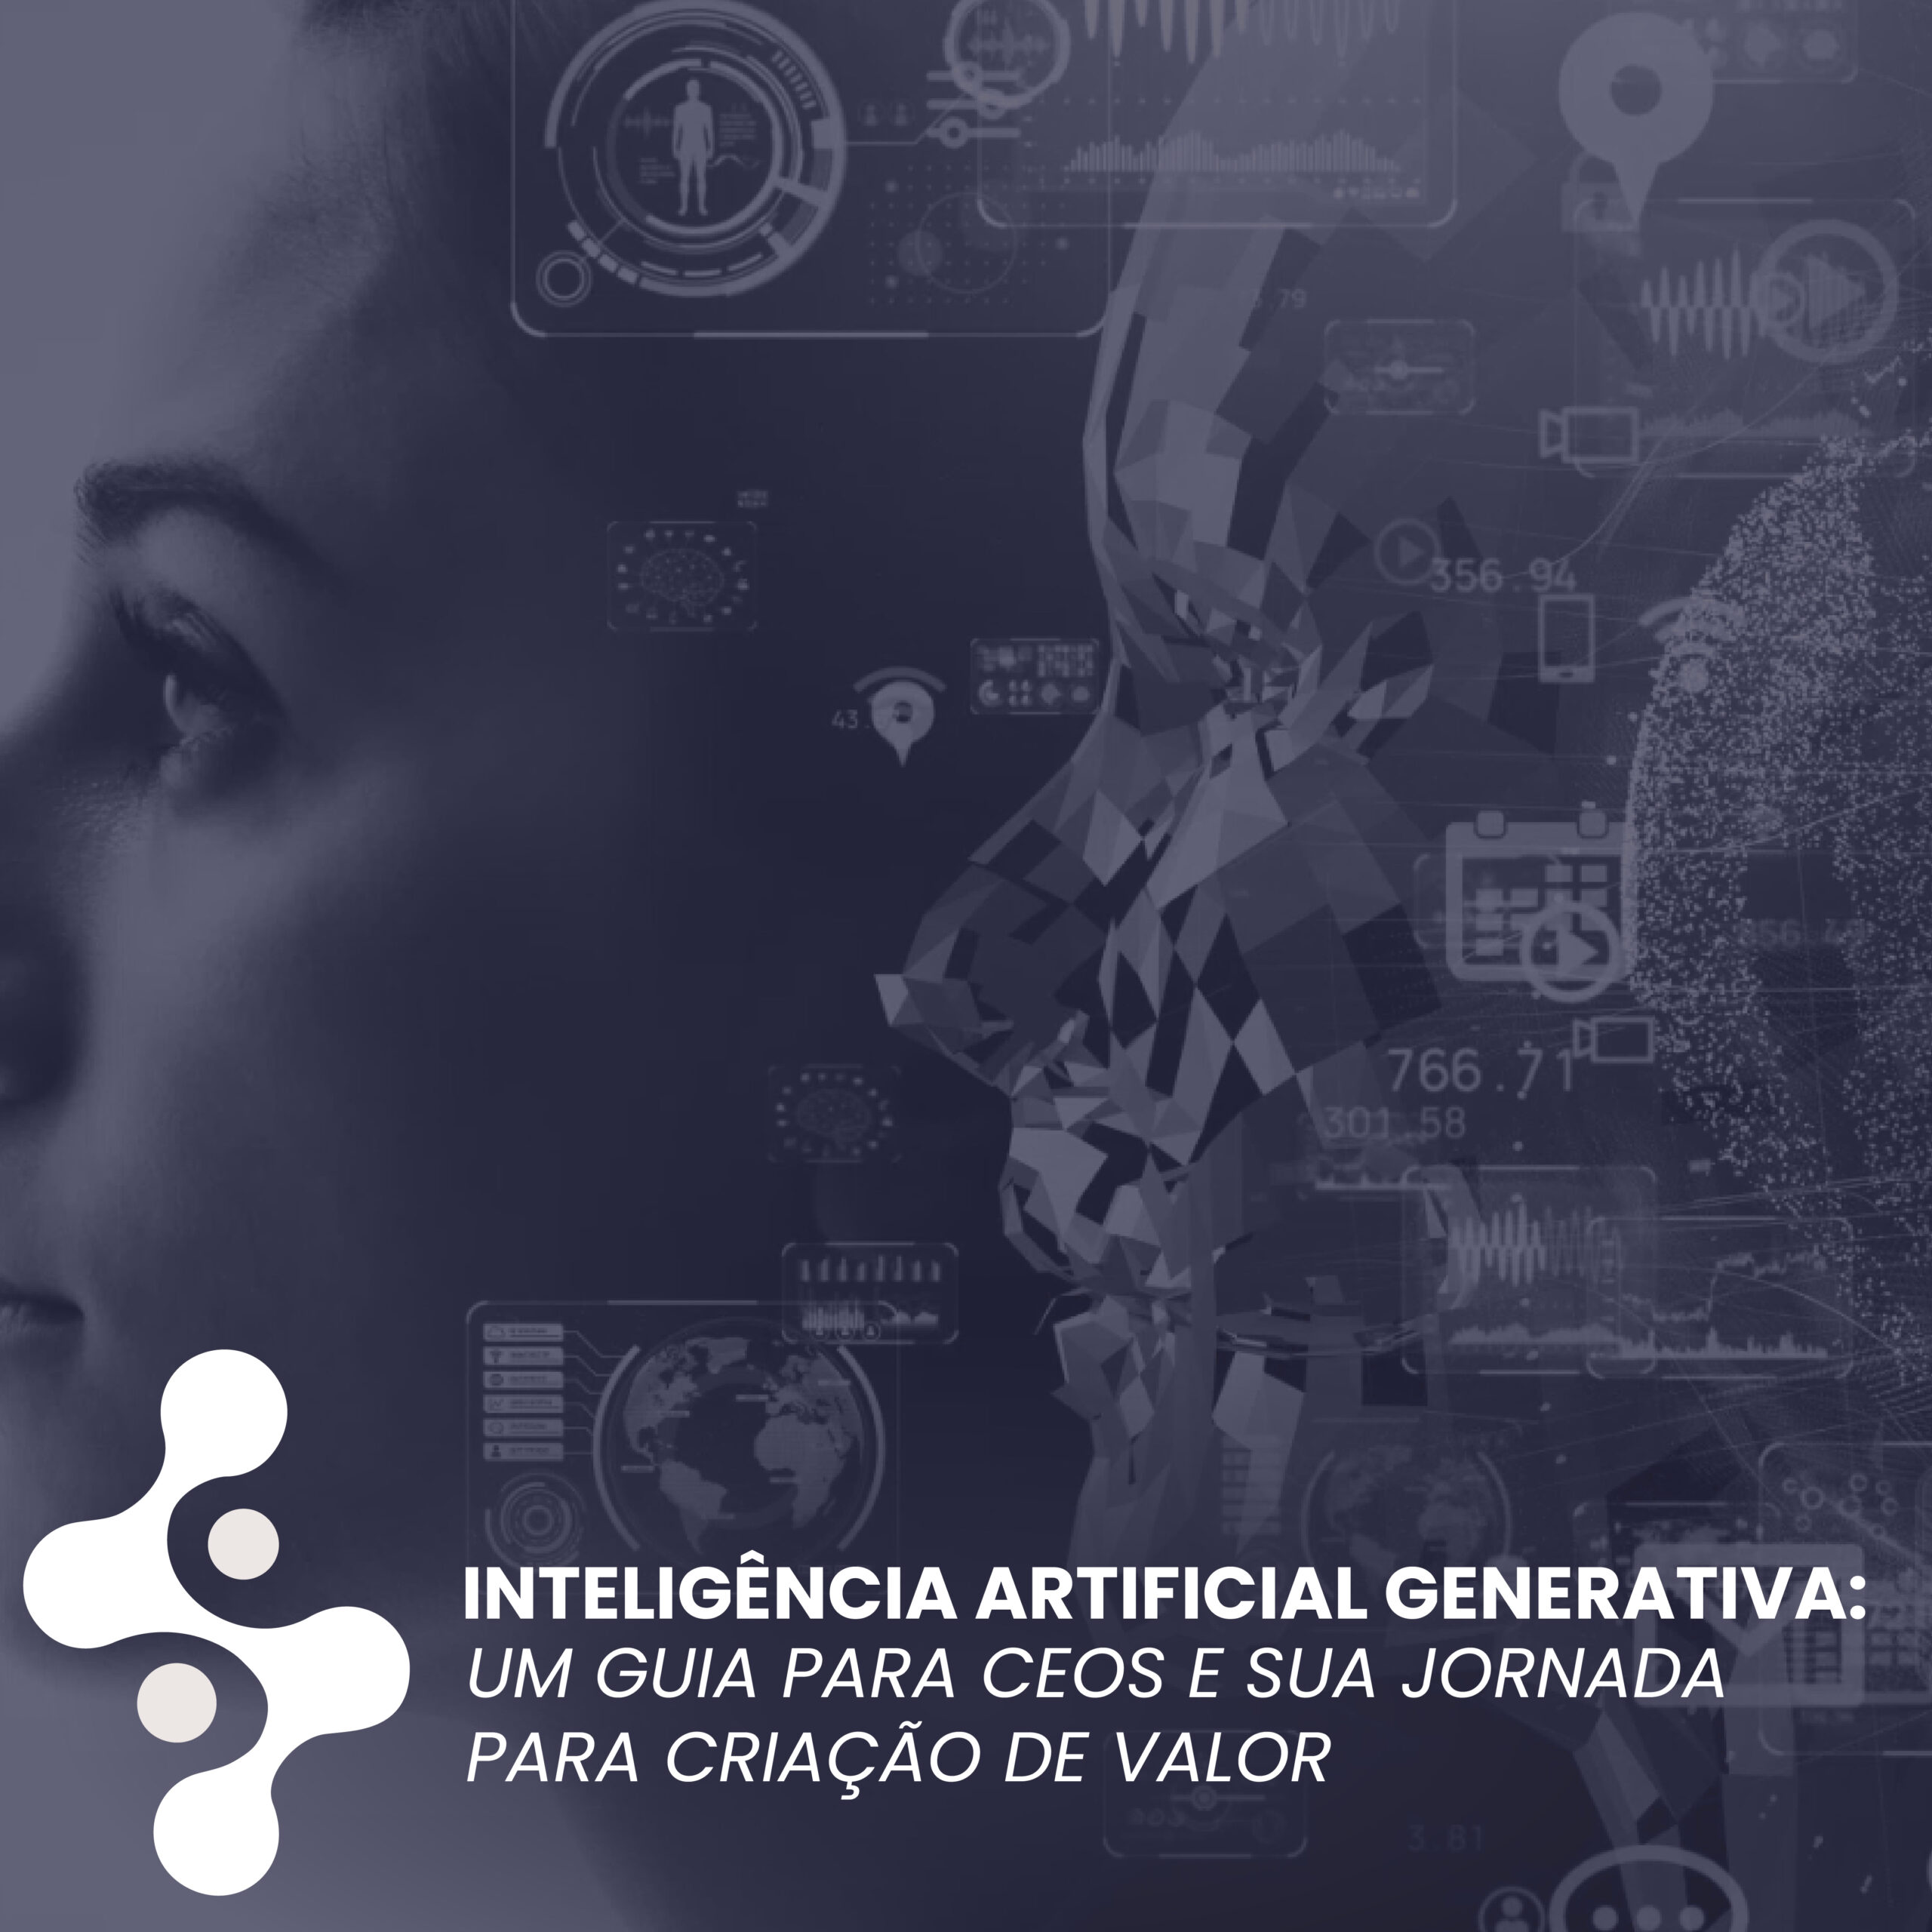 Inteligência Artificial Generativa: Um guia para CEOs e sua jornada de criação de valor